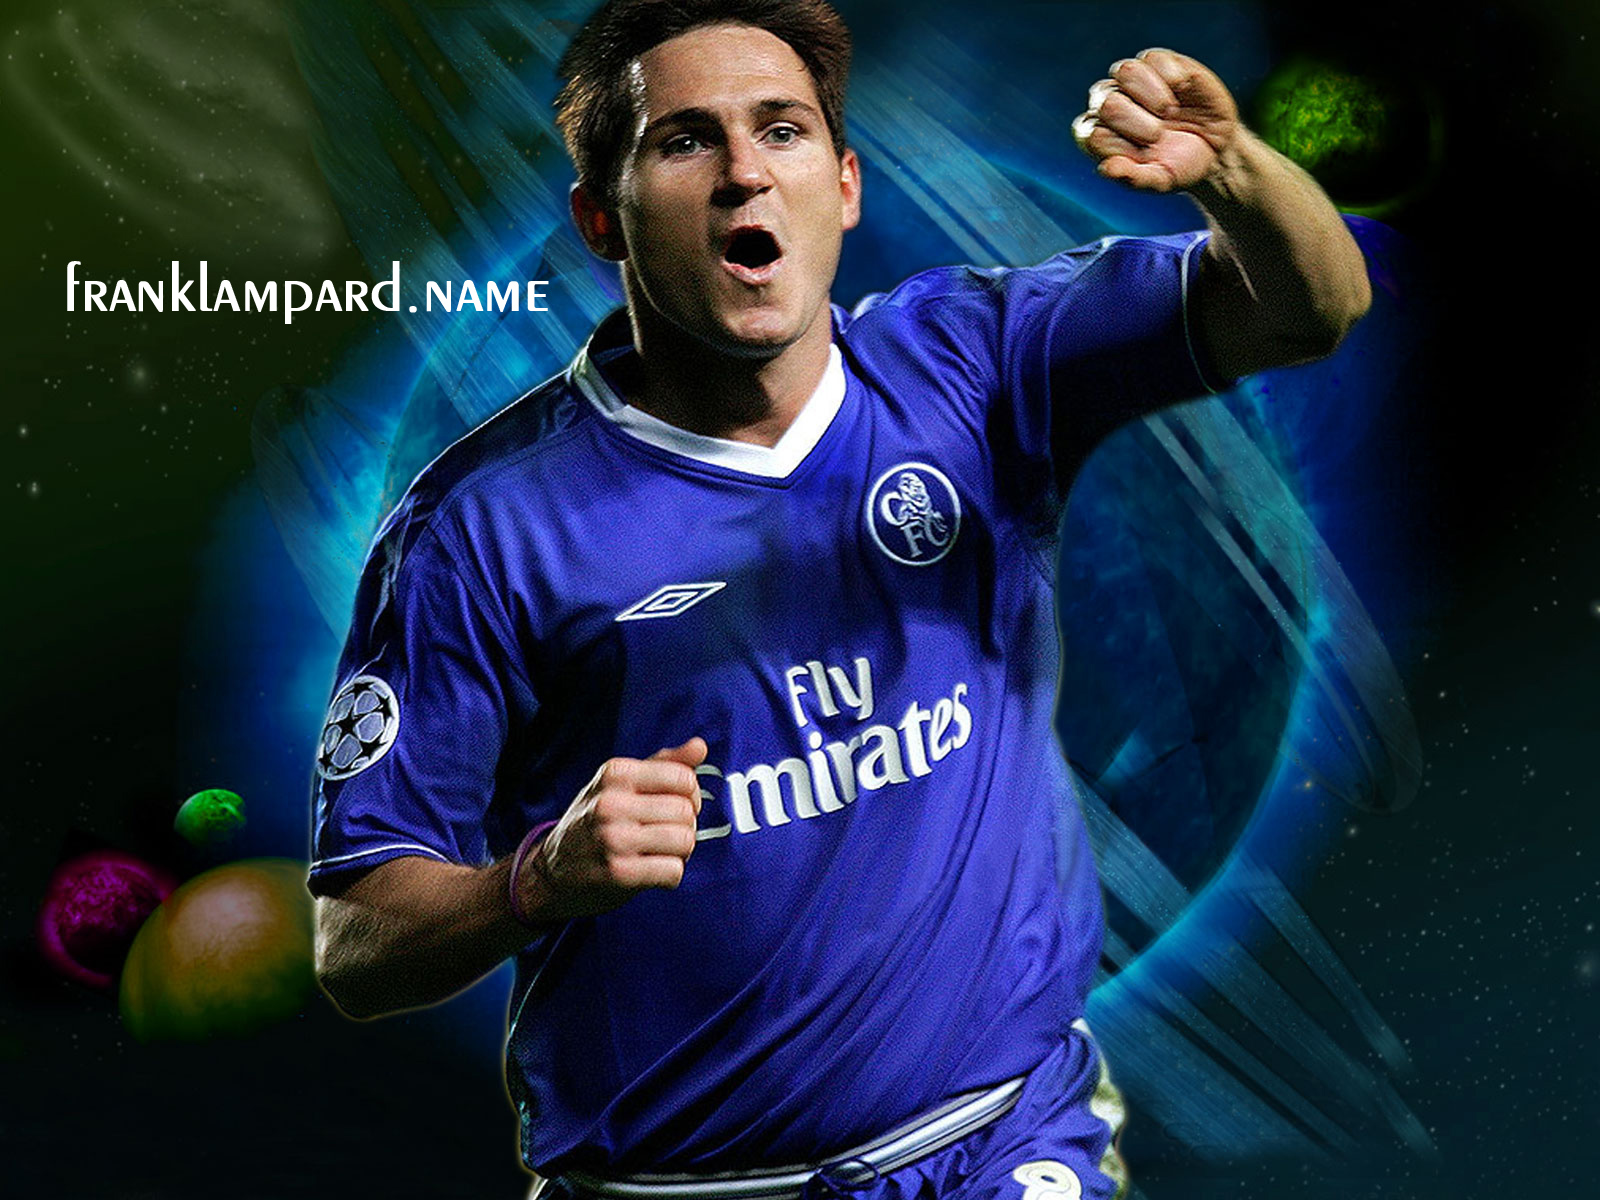 FOOTBALL SUPER STARS: Frank Lampard HD Wallpapers 2012-2013